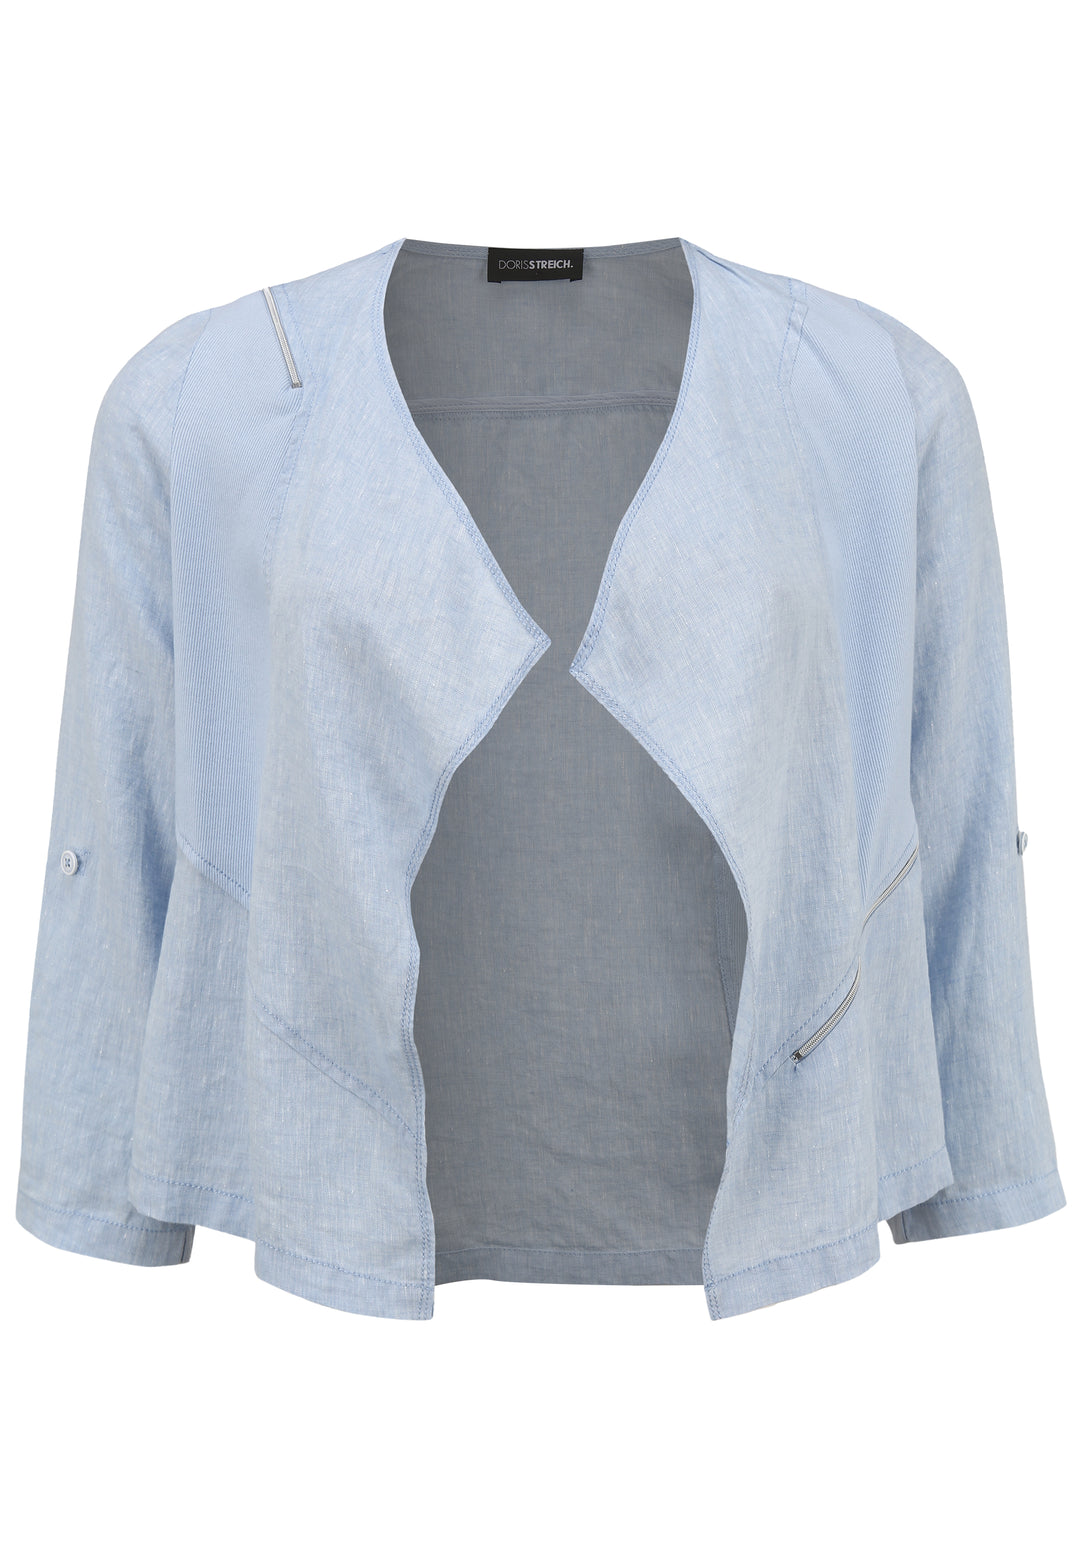 lichtblauwe linnen vest - doris streich - 343135 - grote maten - dameskleding - kledingwinkel - herent - leuven